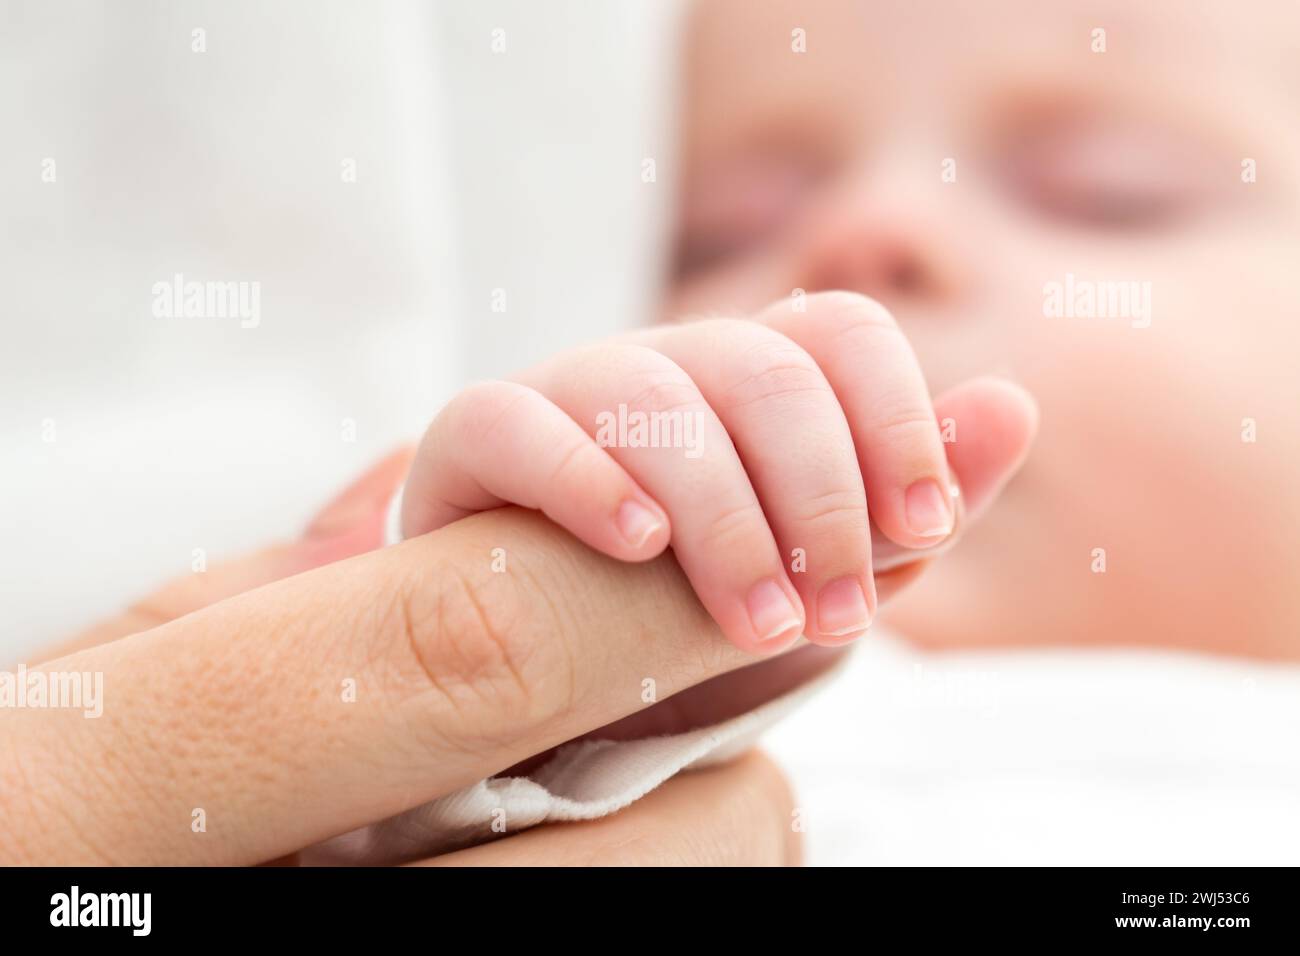 La piccola mano del neonato stringe il dito della madre. Concetto di legame materno e amore Foto Stock